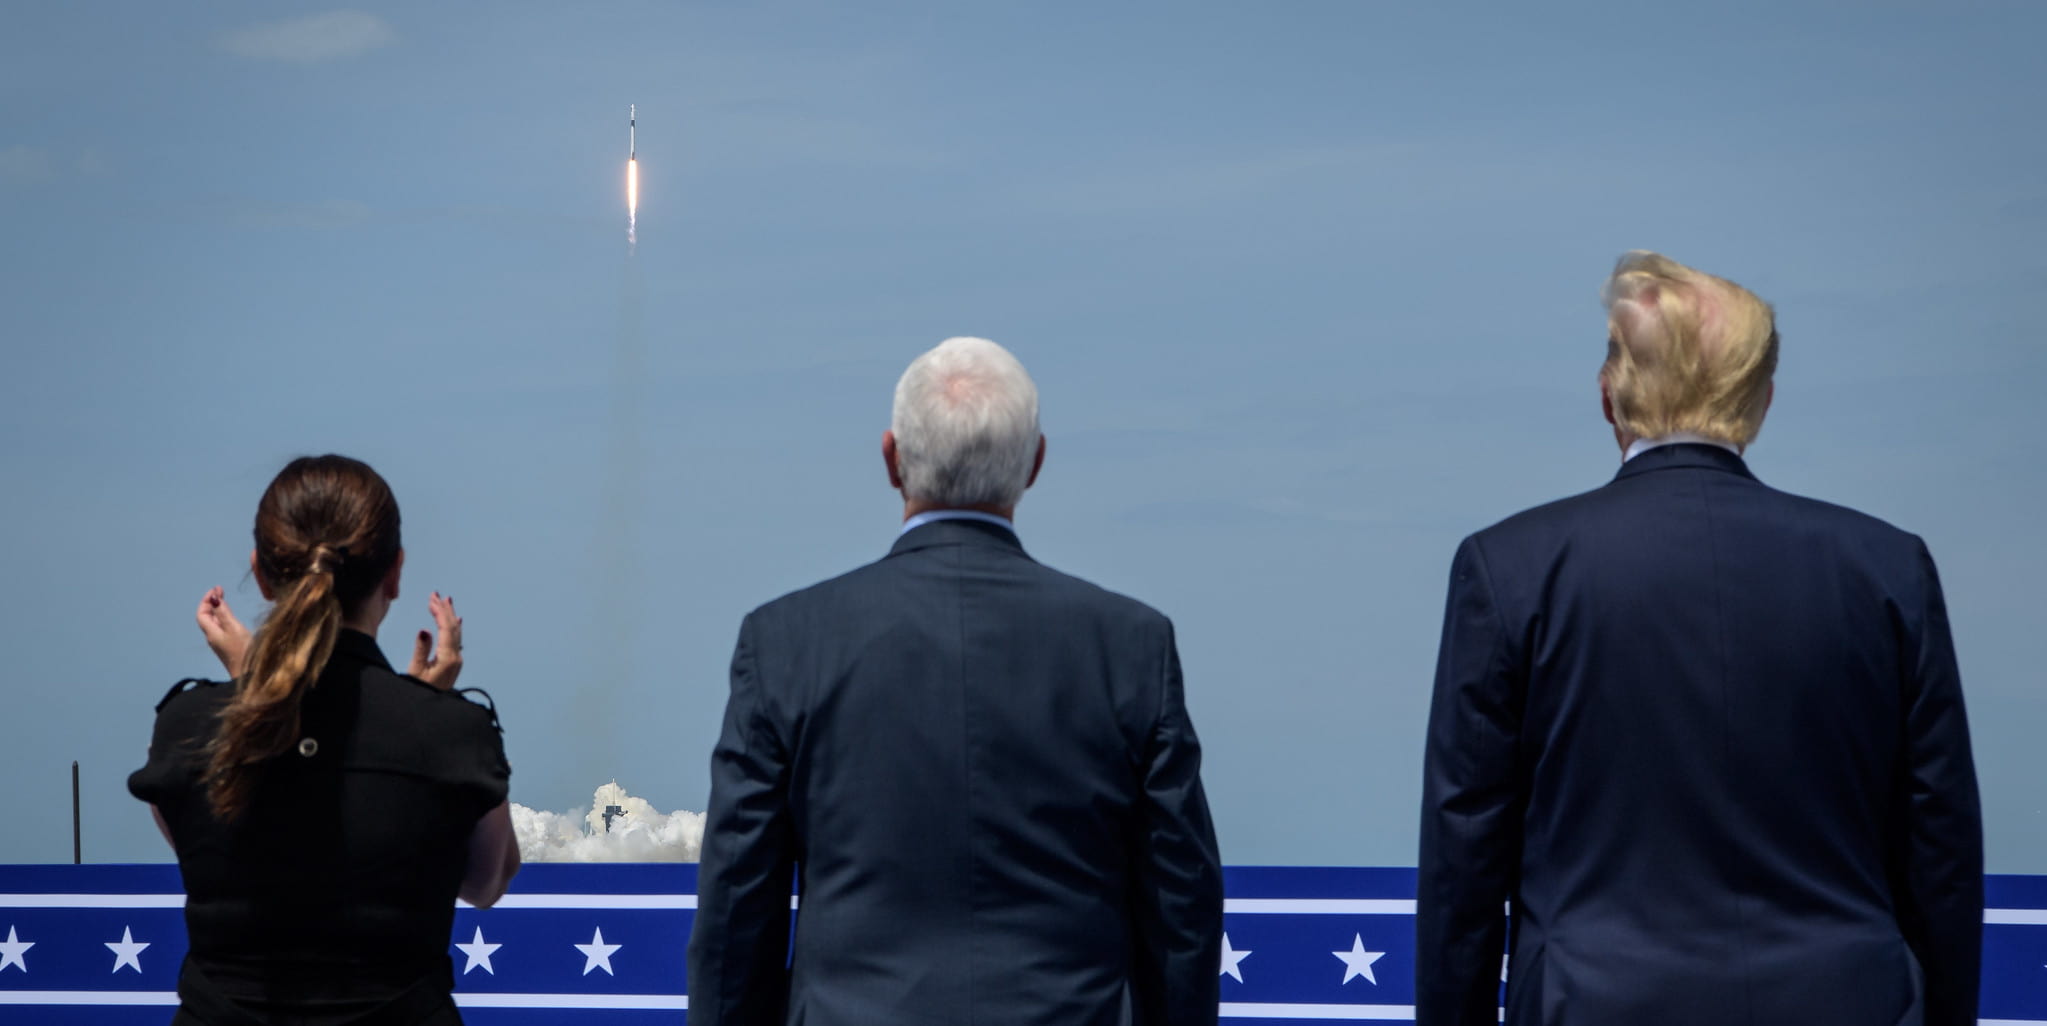 מימין: נשיא ארה"ב דונלד טראמפ, סגן הנשיא מייק פנס ואשתו קרן פנס. קרדיט: NASA/Bill Ingalls